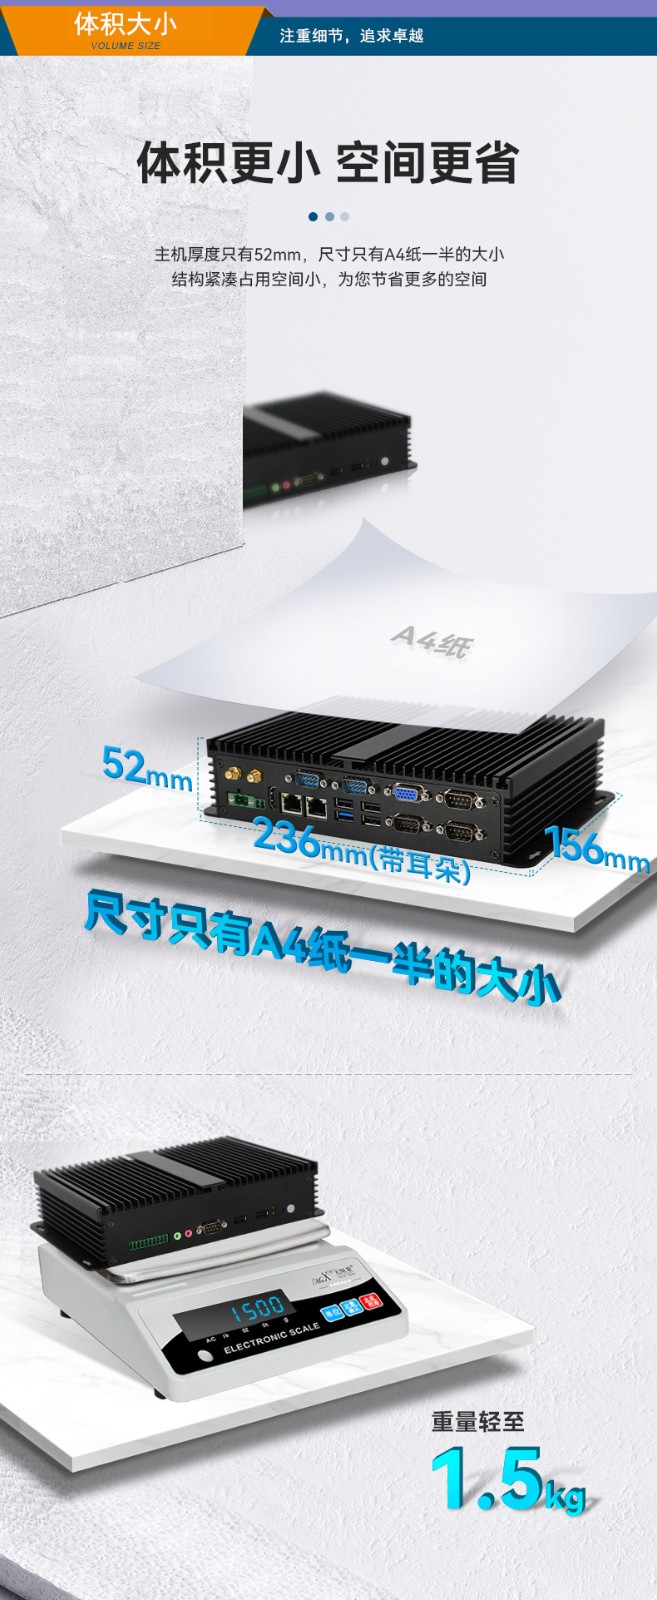 东田嵌入式工控机,迷你工业电脑,DTB-3002-J1900.jpg